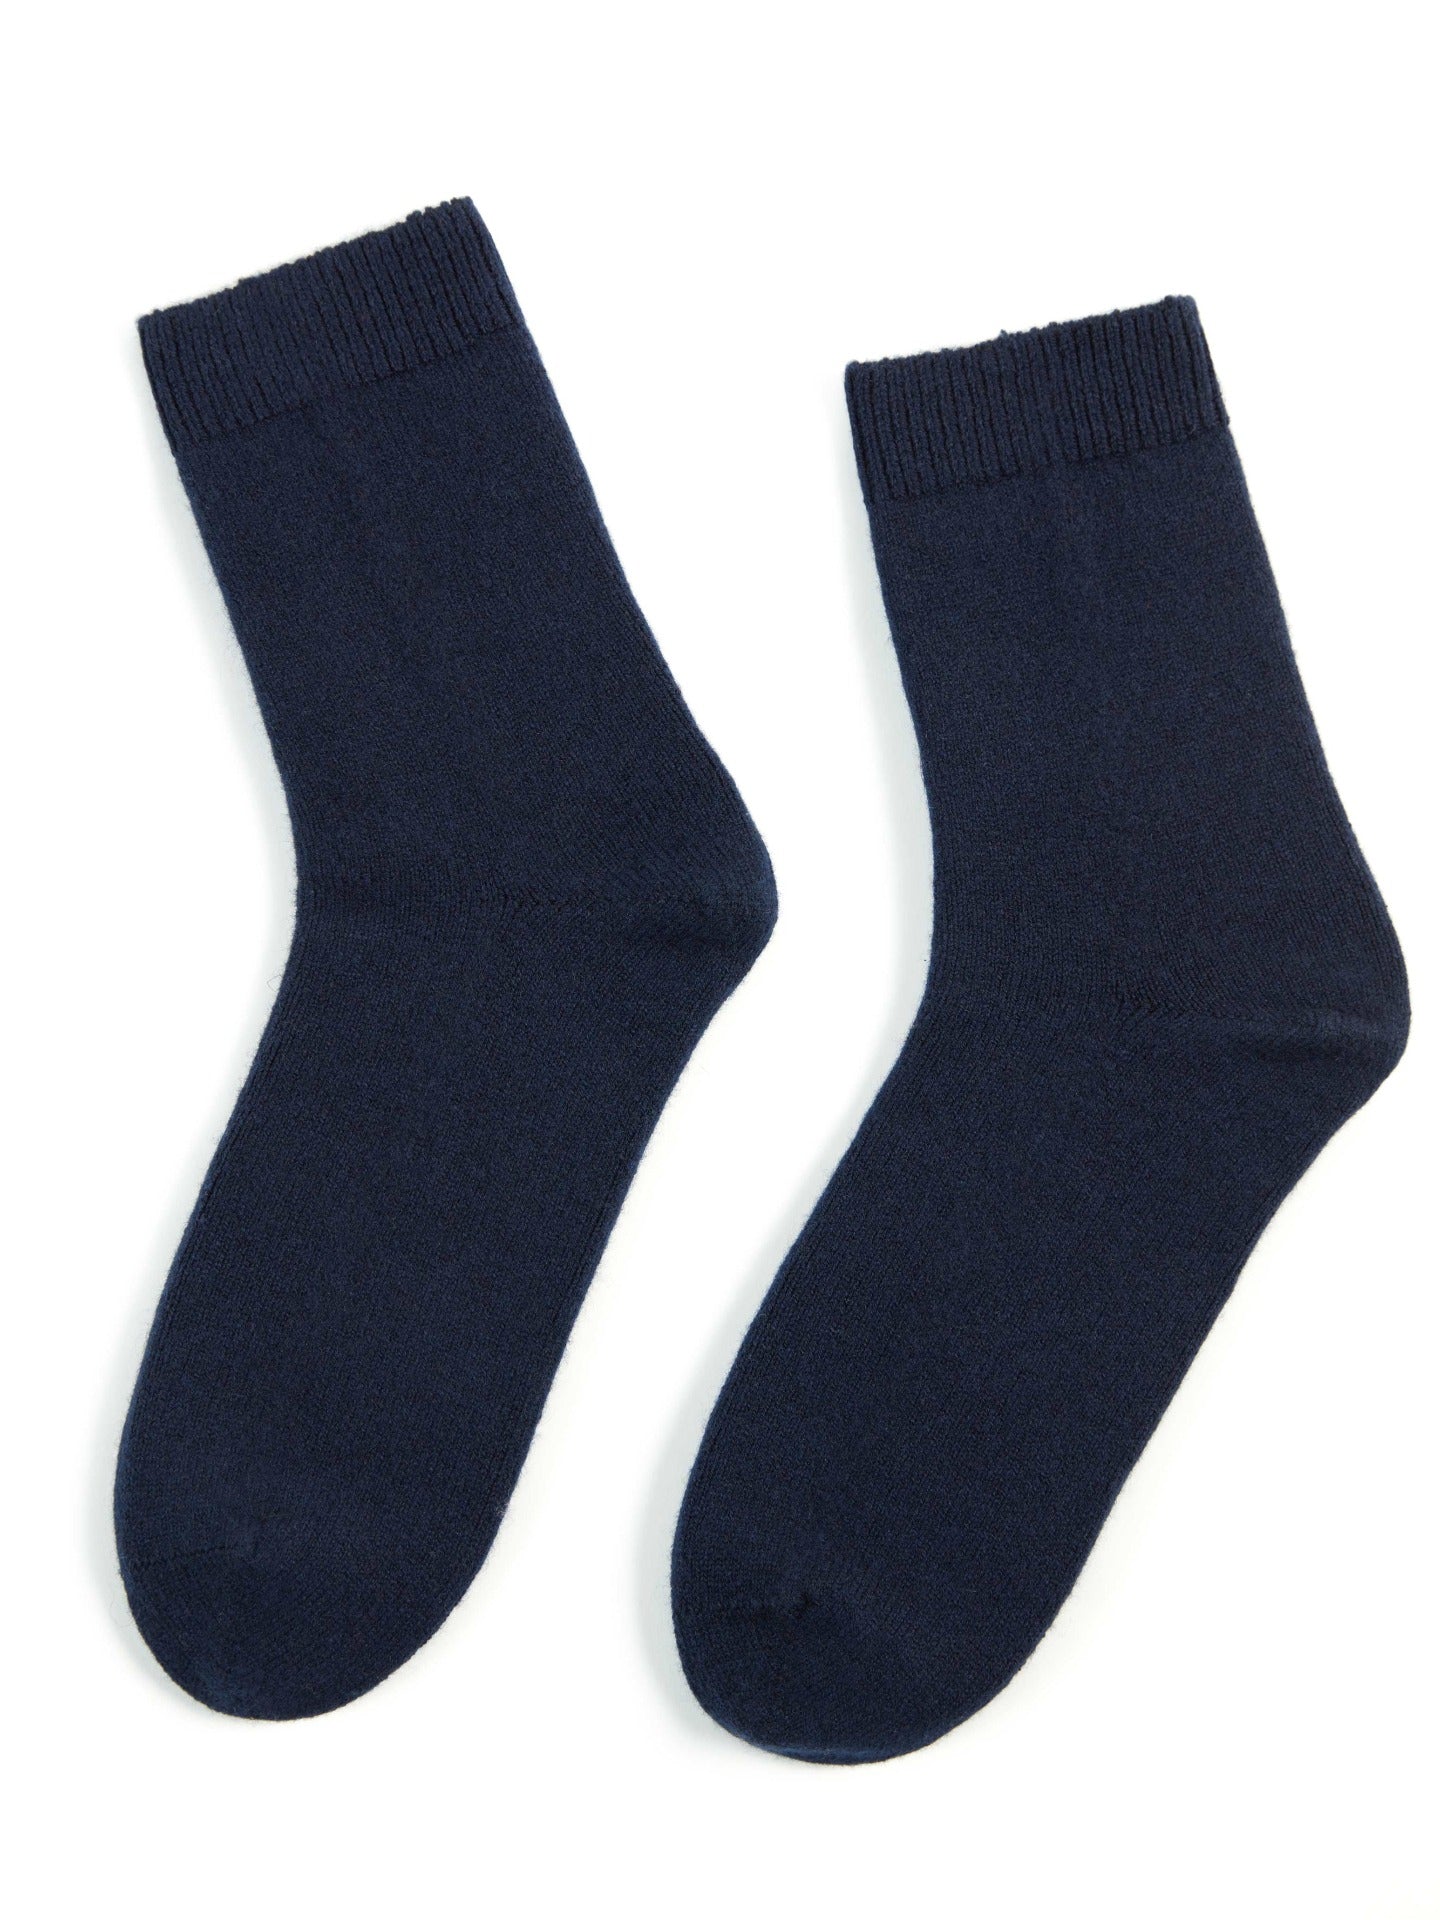 Unisex Cashmere Rib Knit Bed Socks Navy - Gobi Cashmere